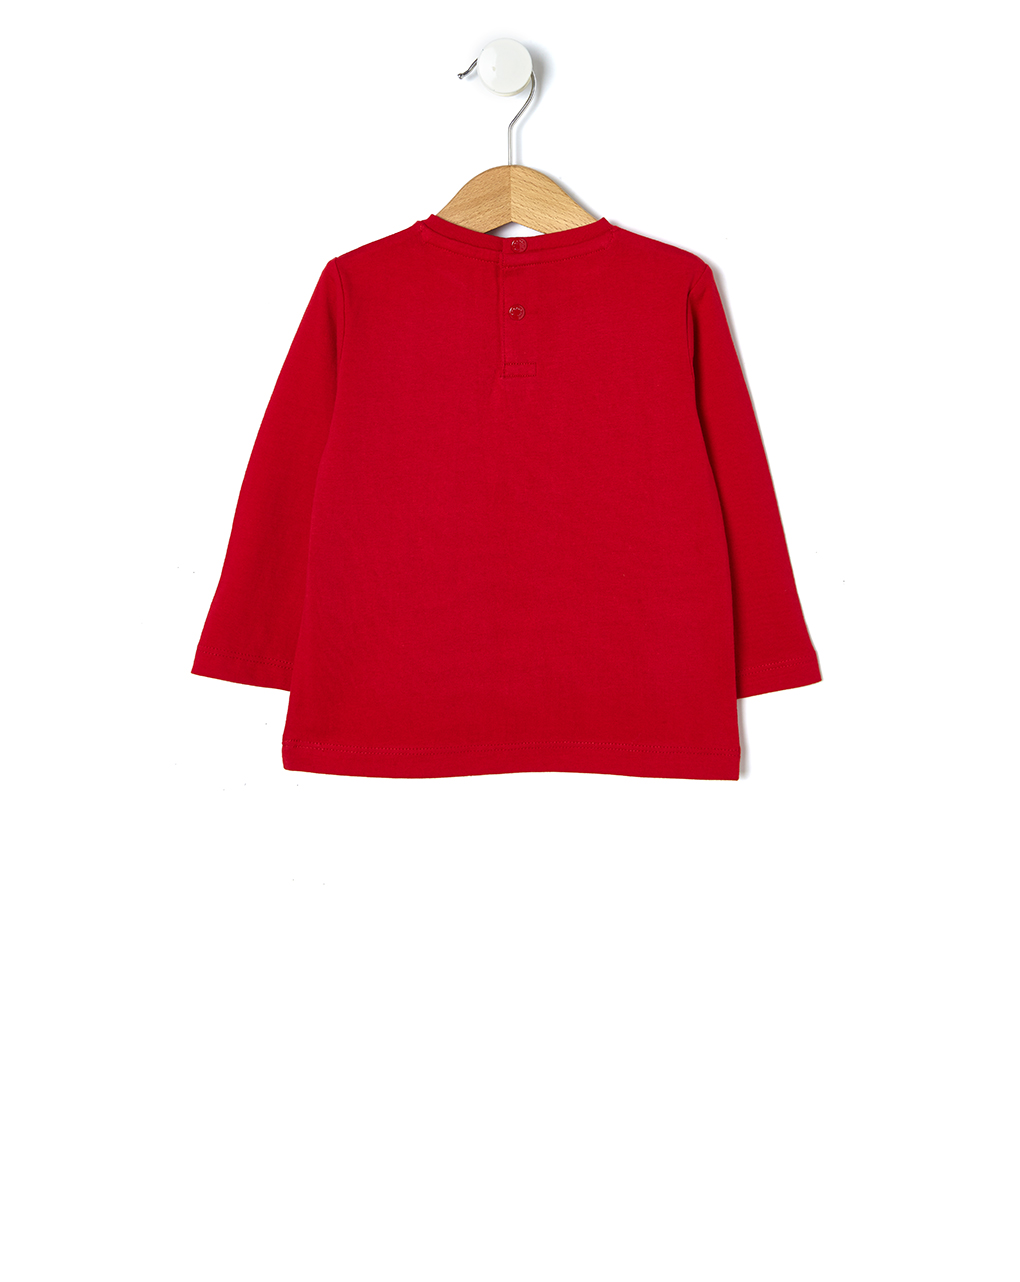 μπλούζα κόκκινη με αρκουδάκι για αγόρι - Prénatal